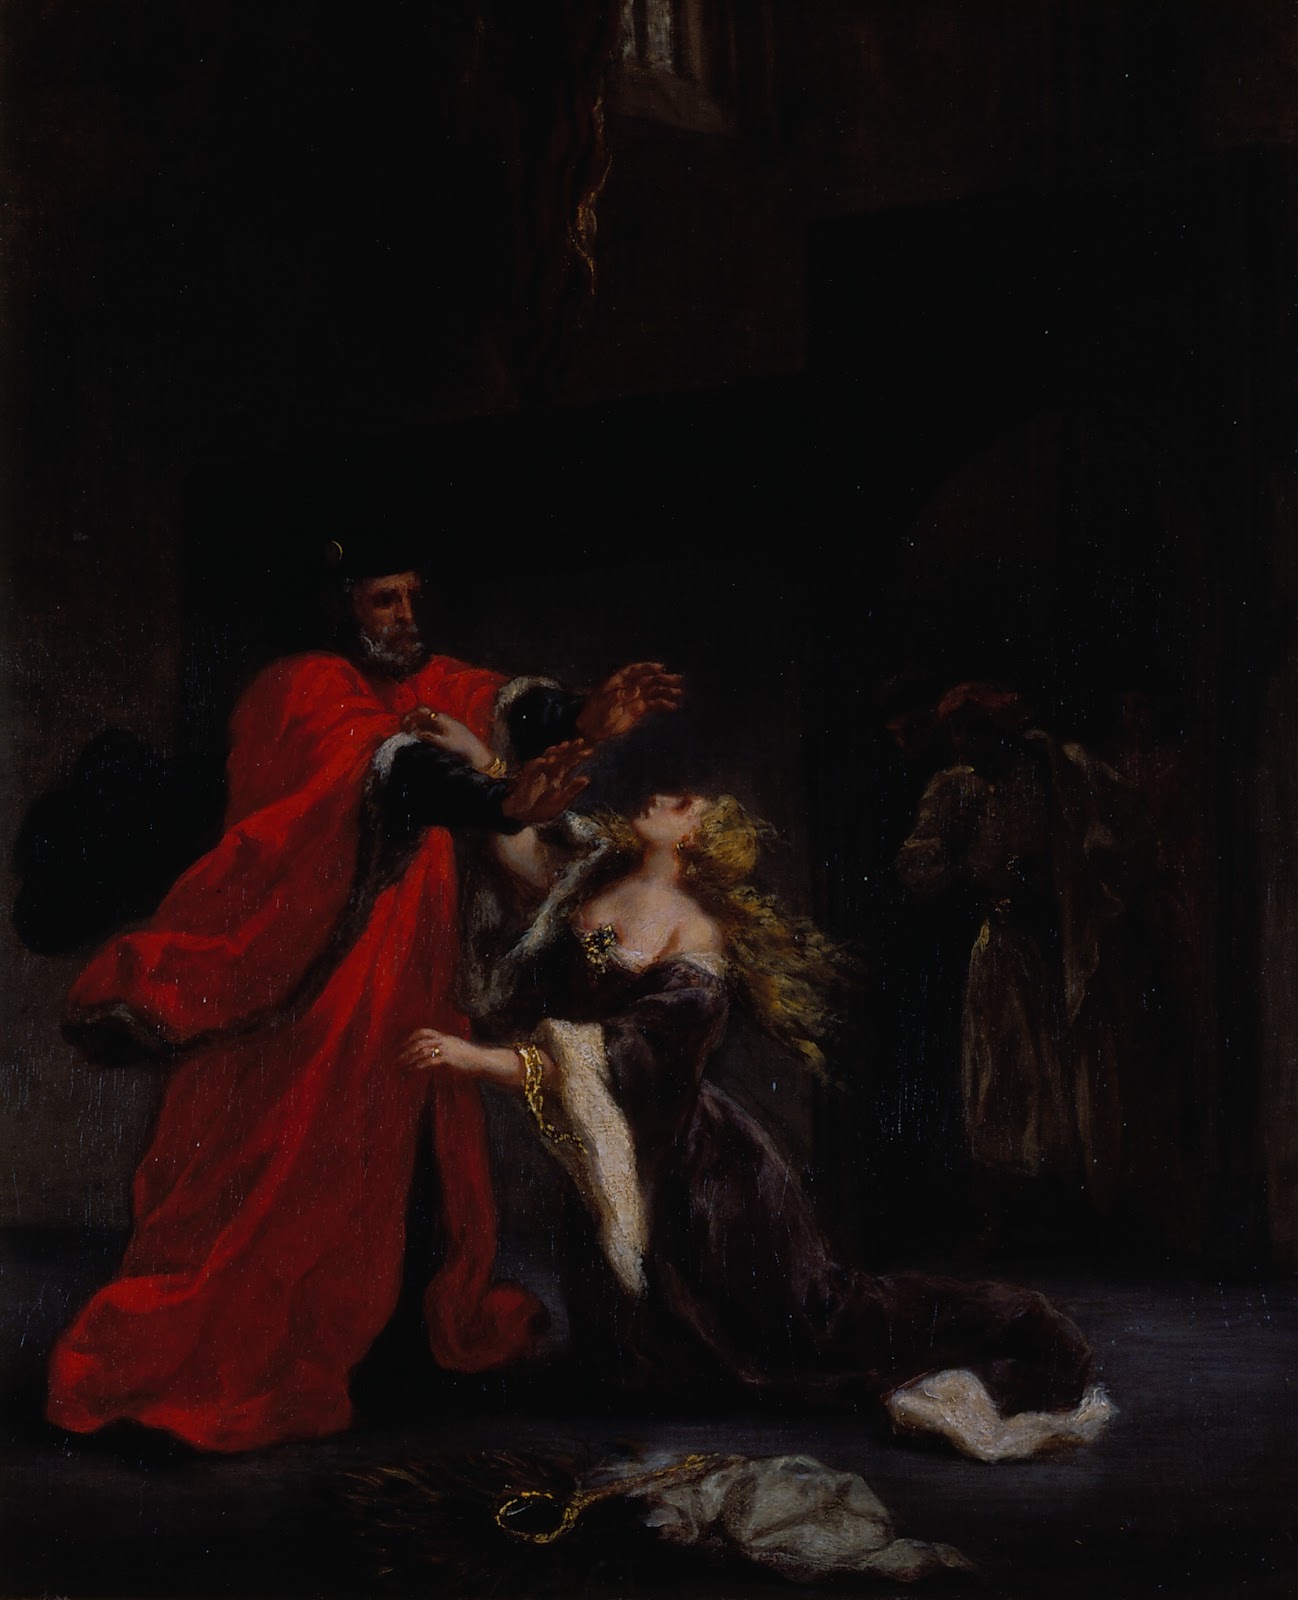 Eugene+Delacroix-1798-1863 (277).jpg